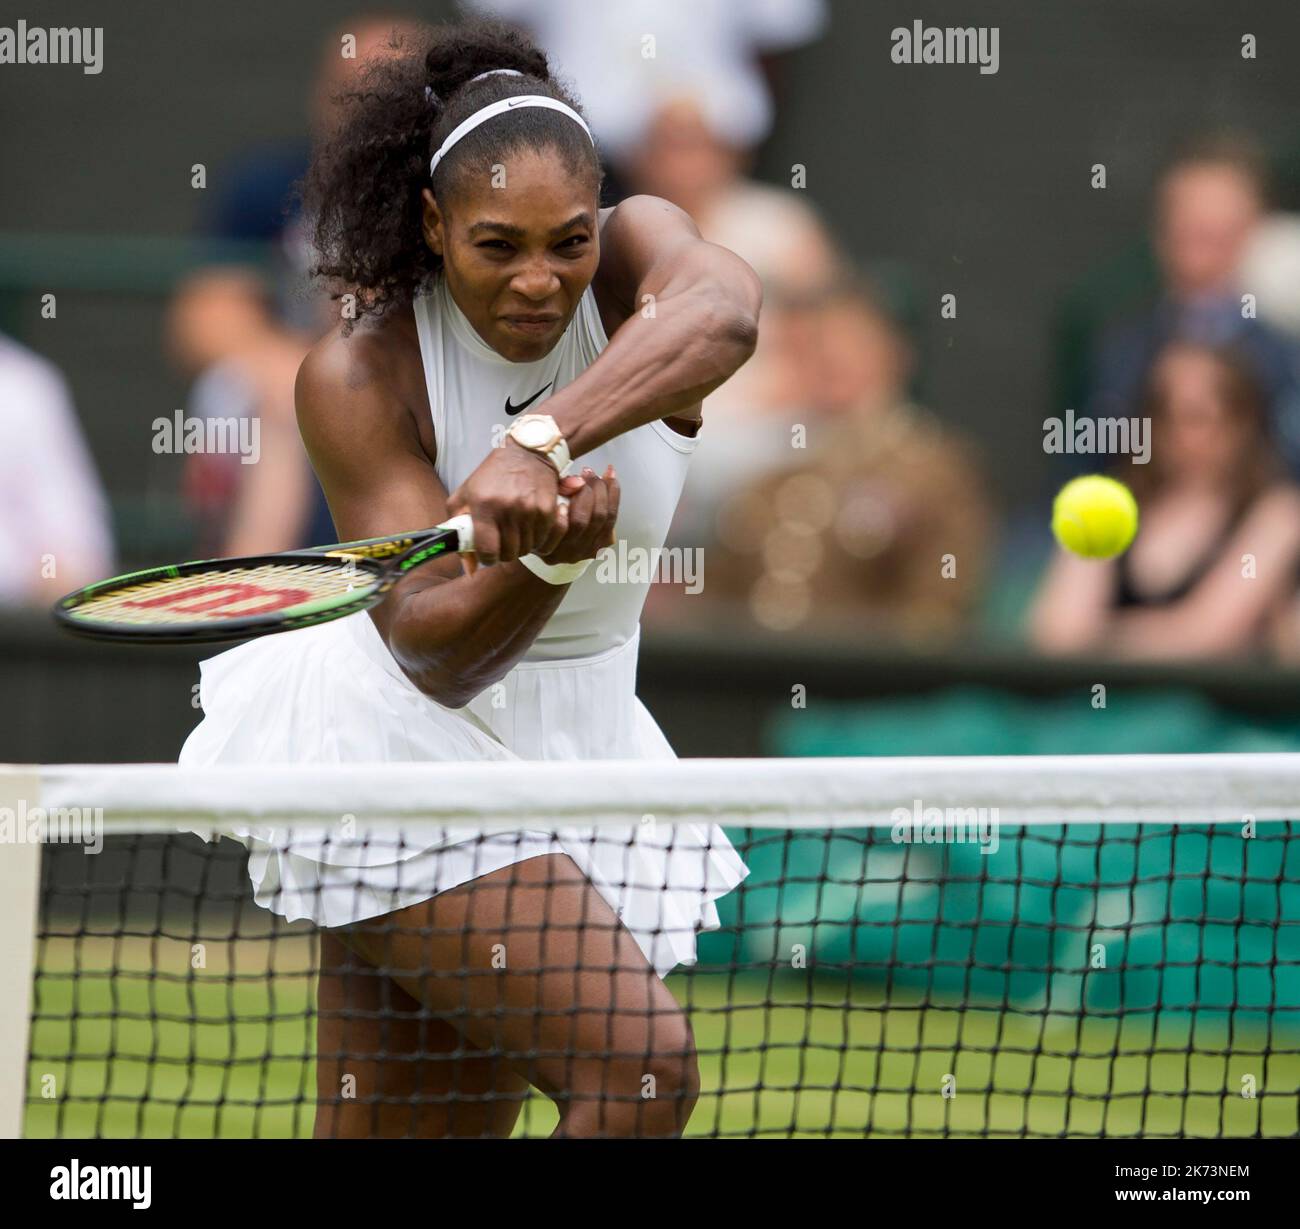 09/07/2016. Wimbledon 2016. Jour 12, Centre court, finale des femmes célibataires. Serena Williams (USA) contre Angelique Curber, (GER). Serena Williams en action. Banque D'Images